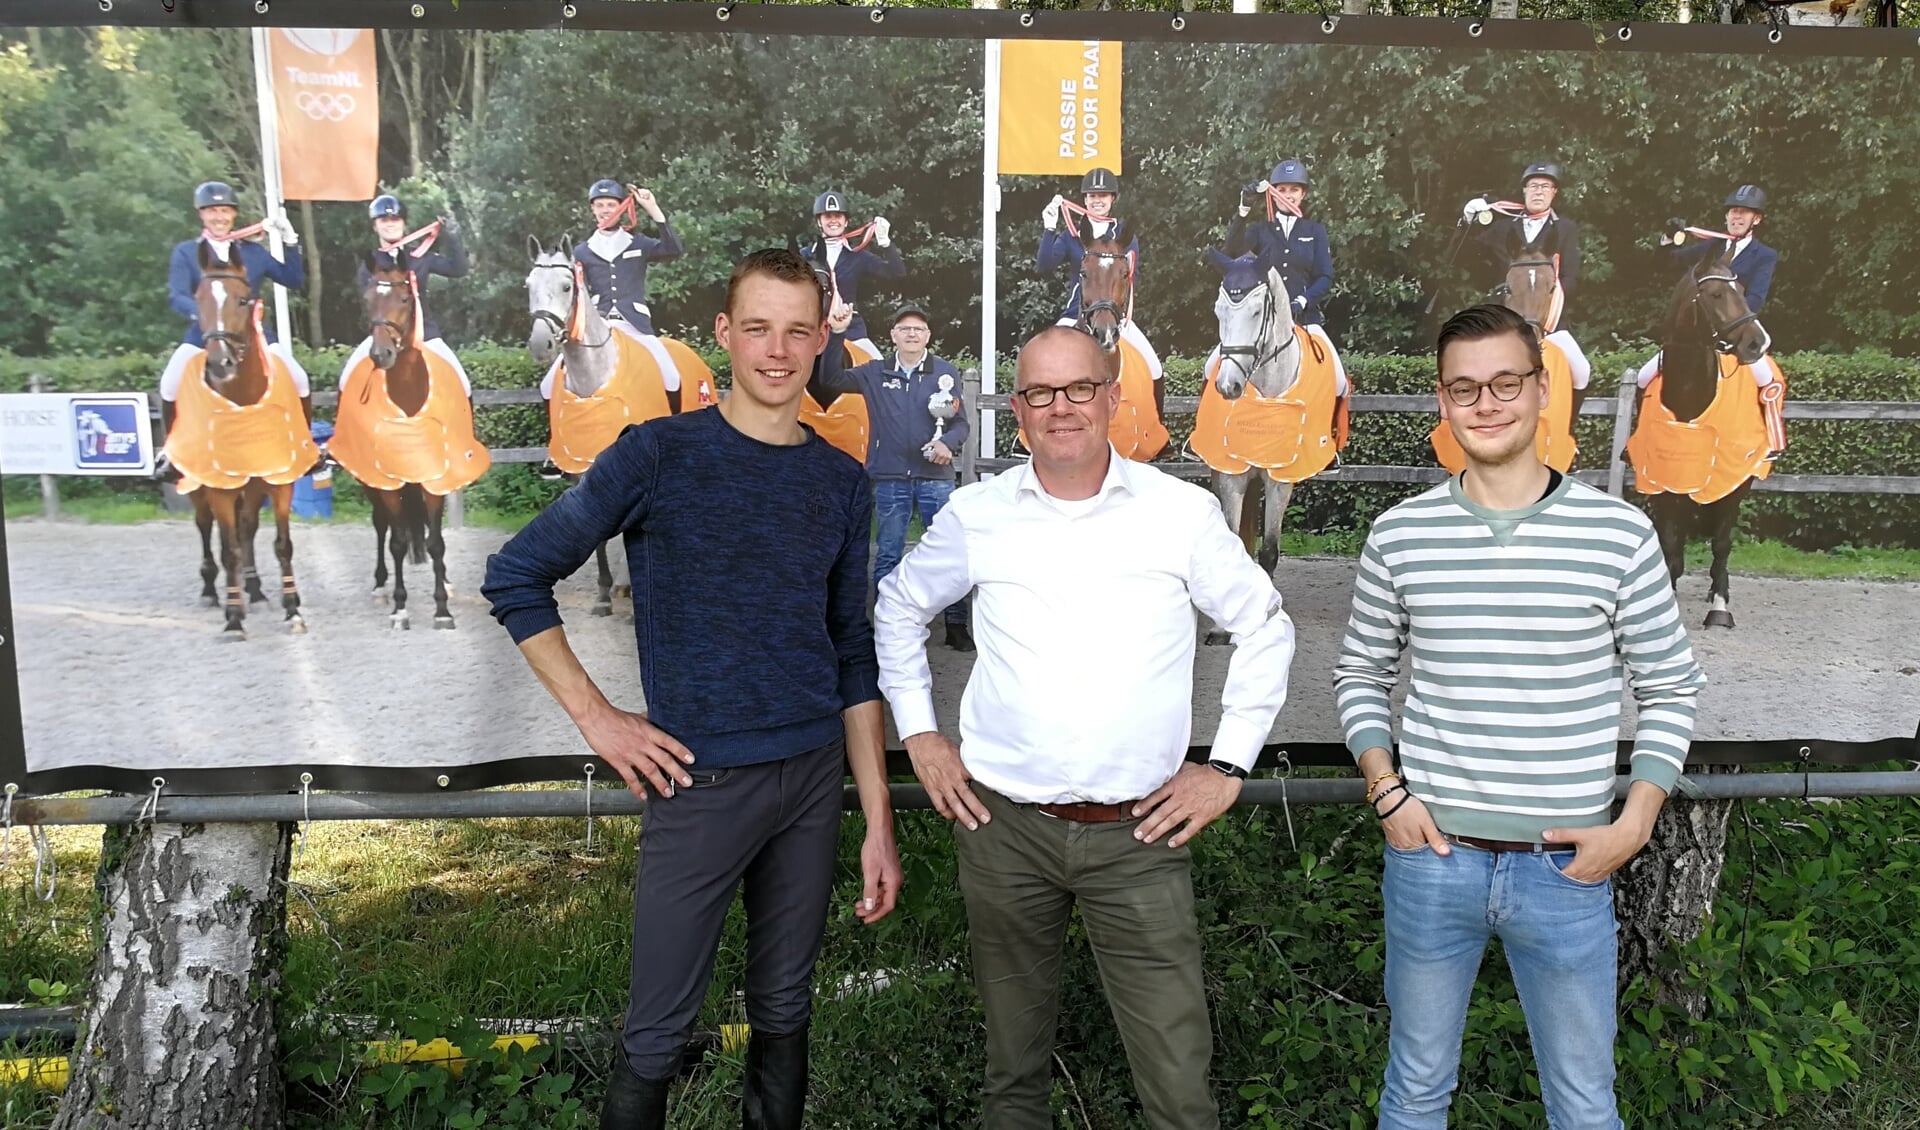 Organisatoren Wouter Hermelink, Hans Rosenbrand en Lars Temmink voor de foto van het kampioensteam 2018. Foto: Rob Weeber